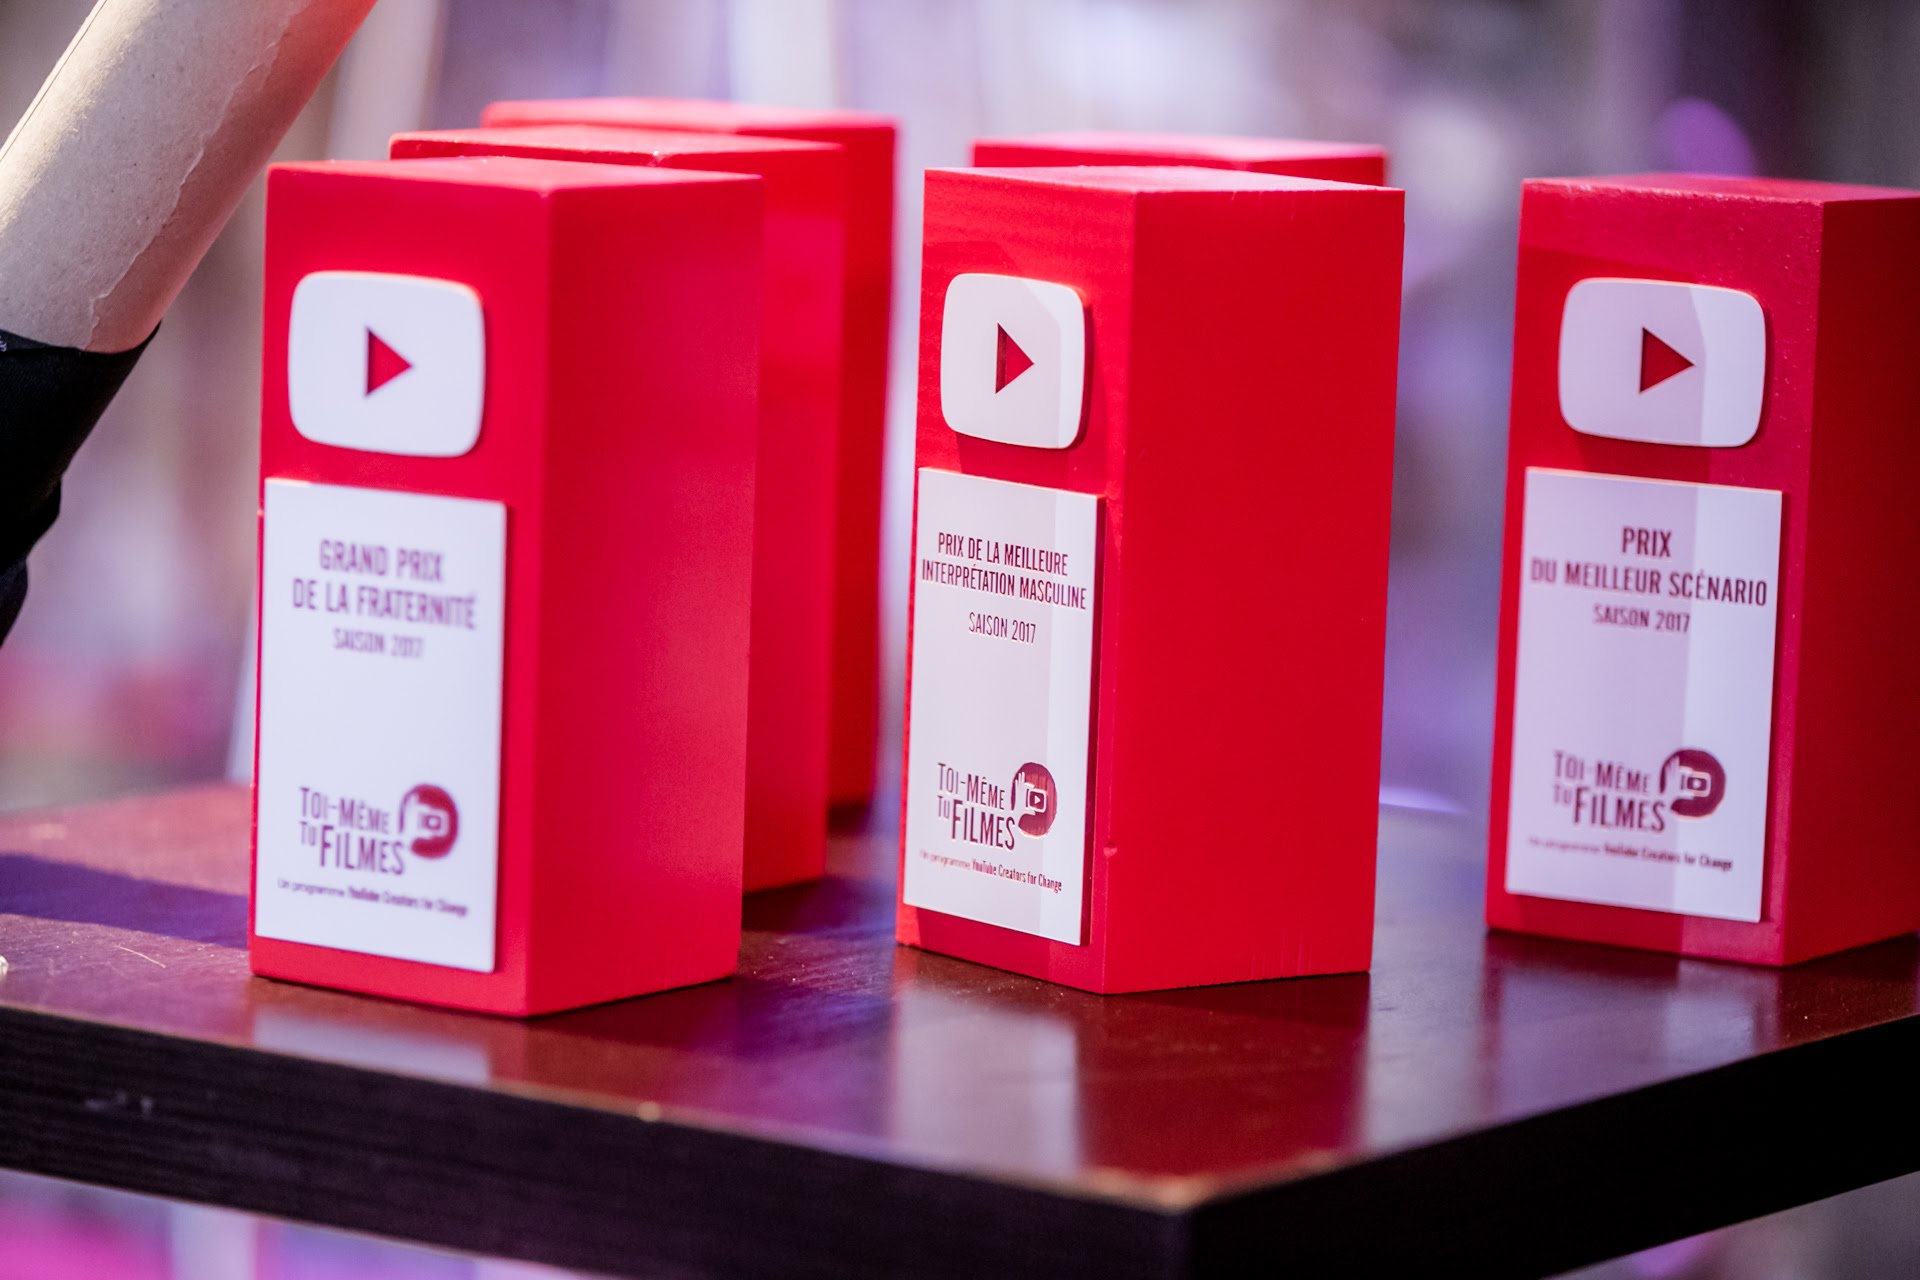  Récompenses YouTube pour le festival “Toi-même tu filmes”, organisé par l’agence DEEP DIVE -  https://deepdive.business.site/  